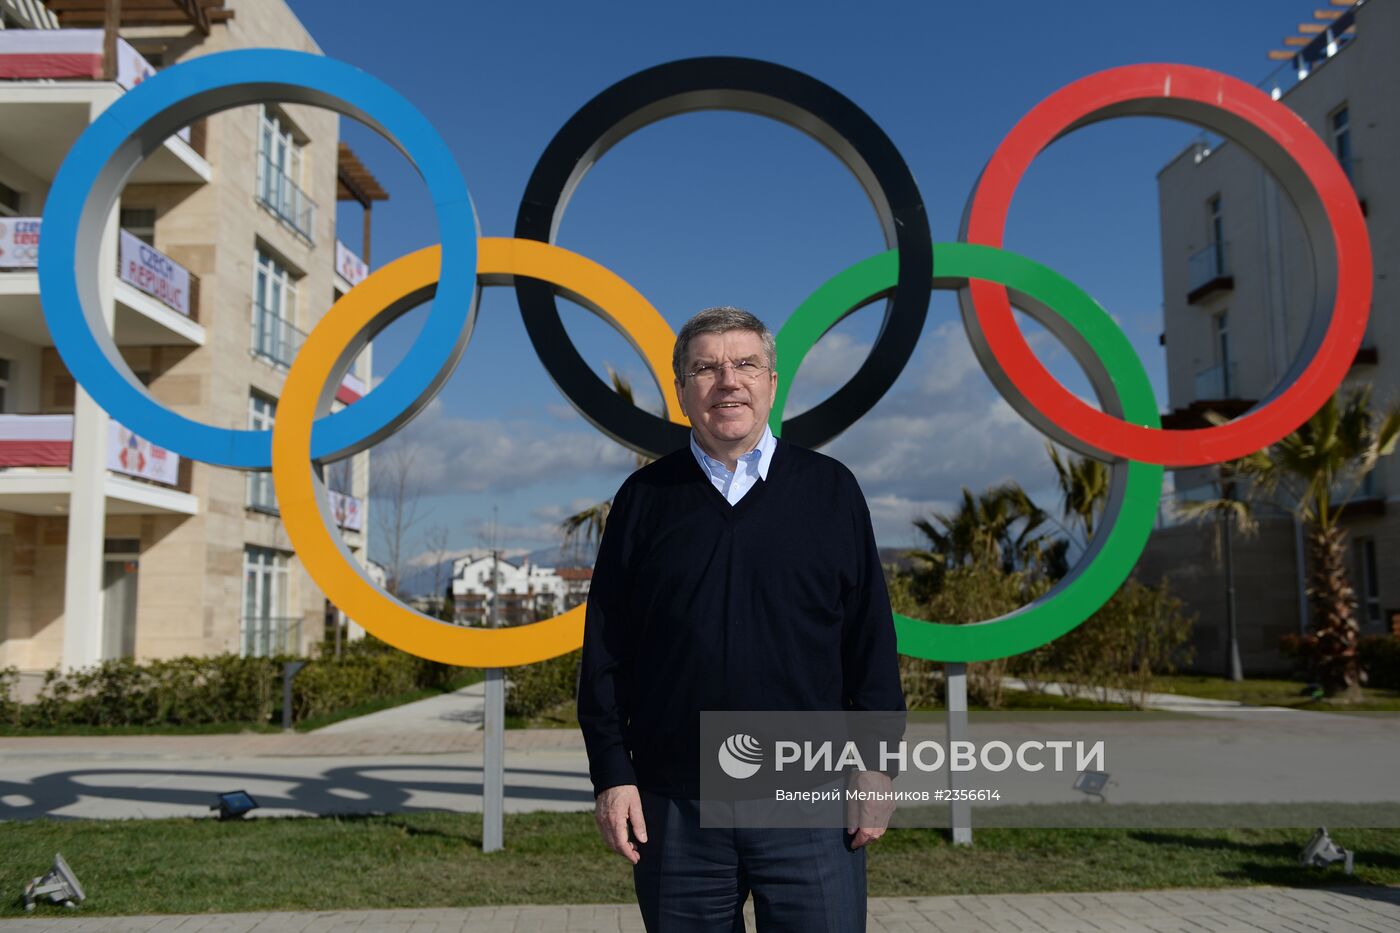 резидент МОК Томас Бах посетил Олимпийскую деревню прибрежного кластера